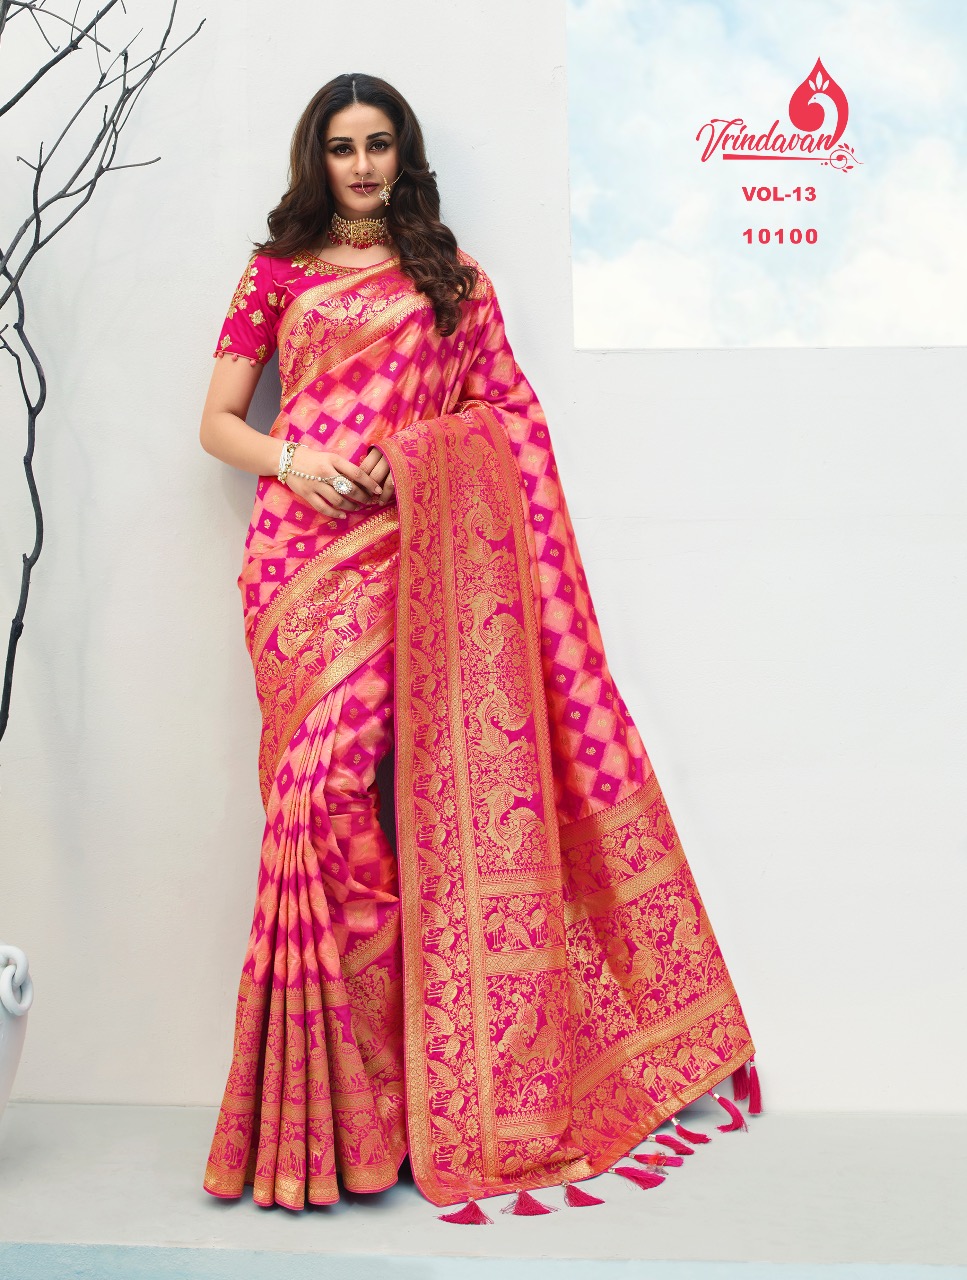 Vrindavan Hit List Soft Silk Heavy Wedding Wear Sarees Colle...